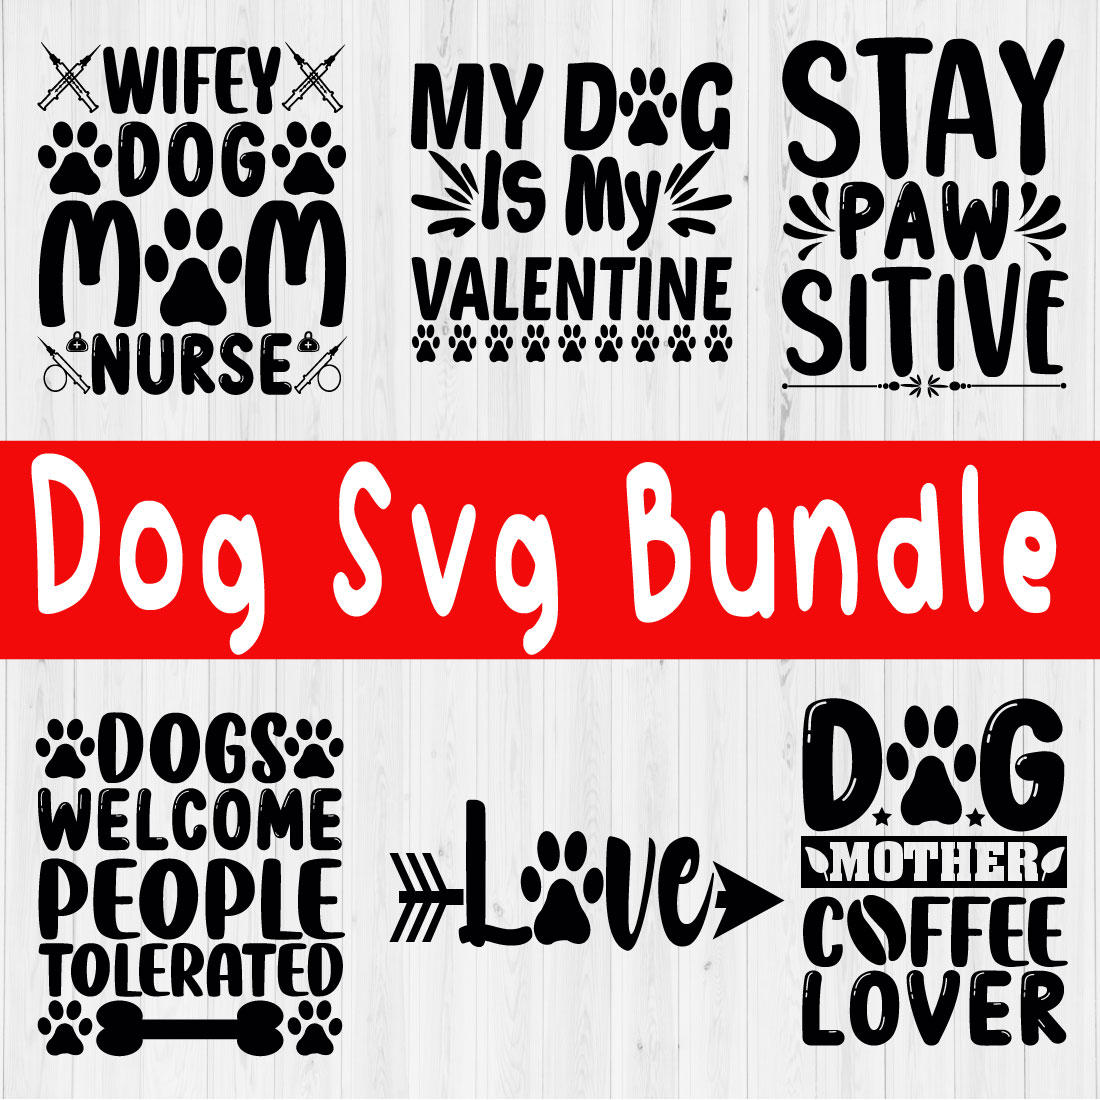 Dog Lover Svg Bundle Vol16 cover image.